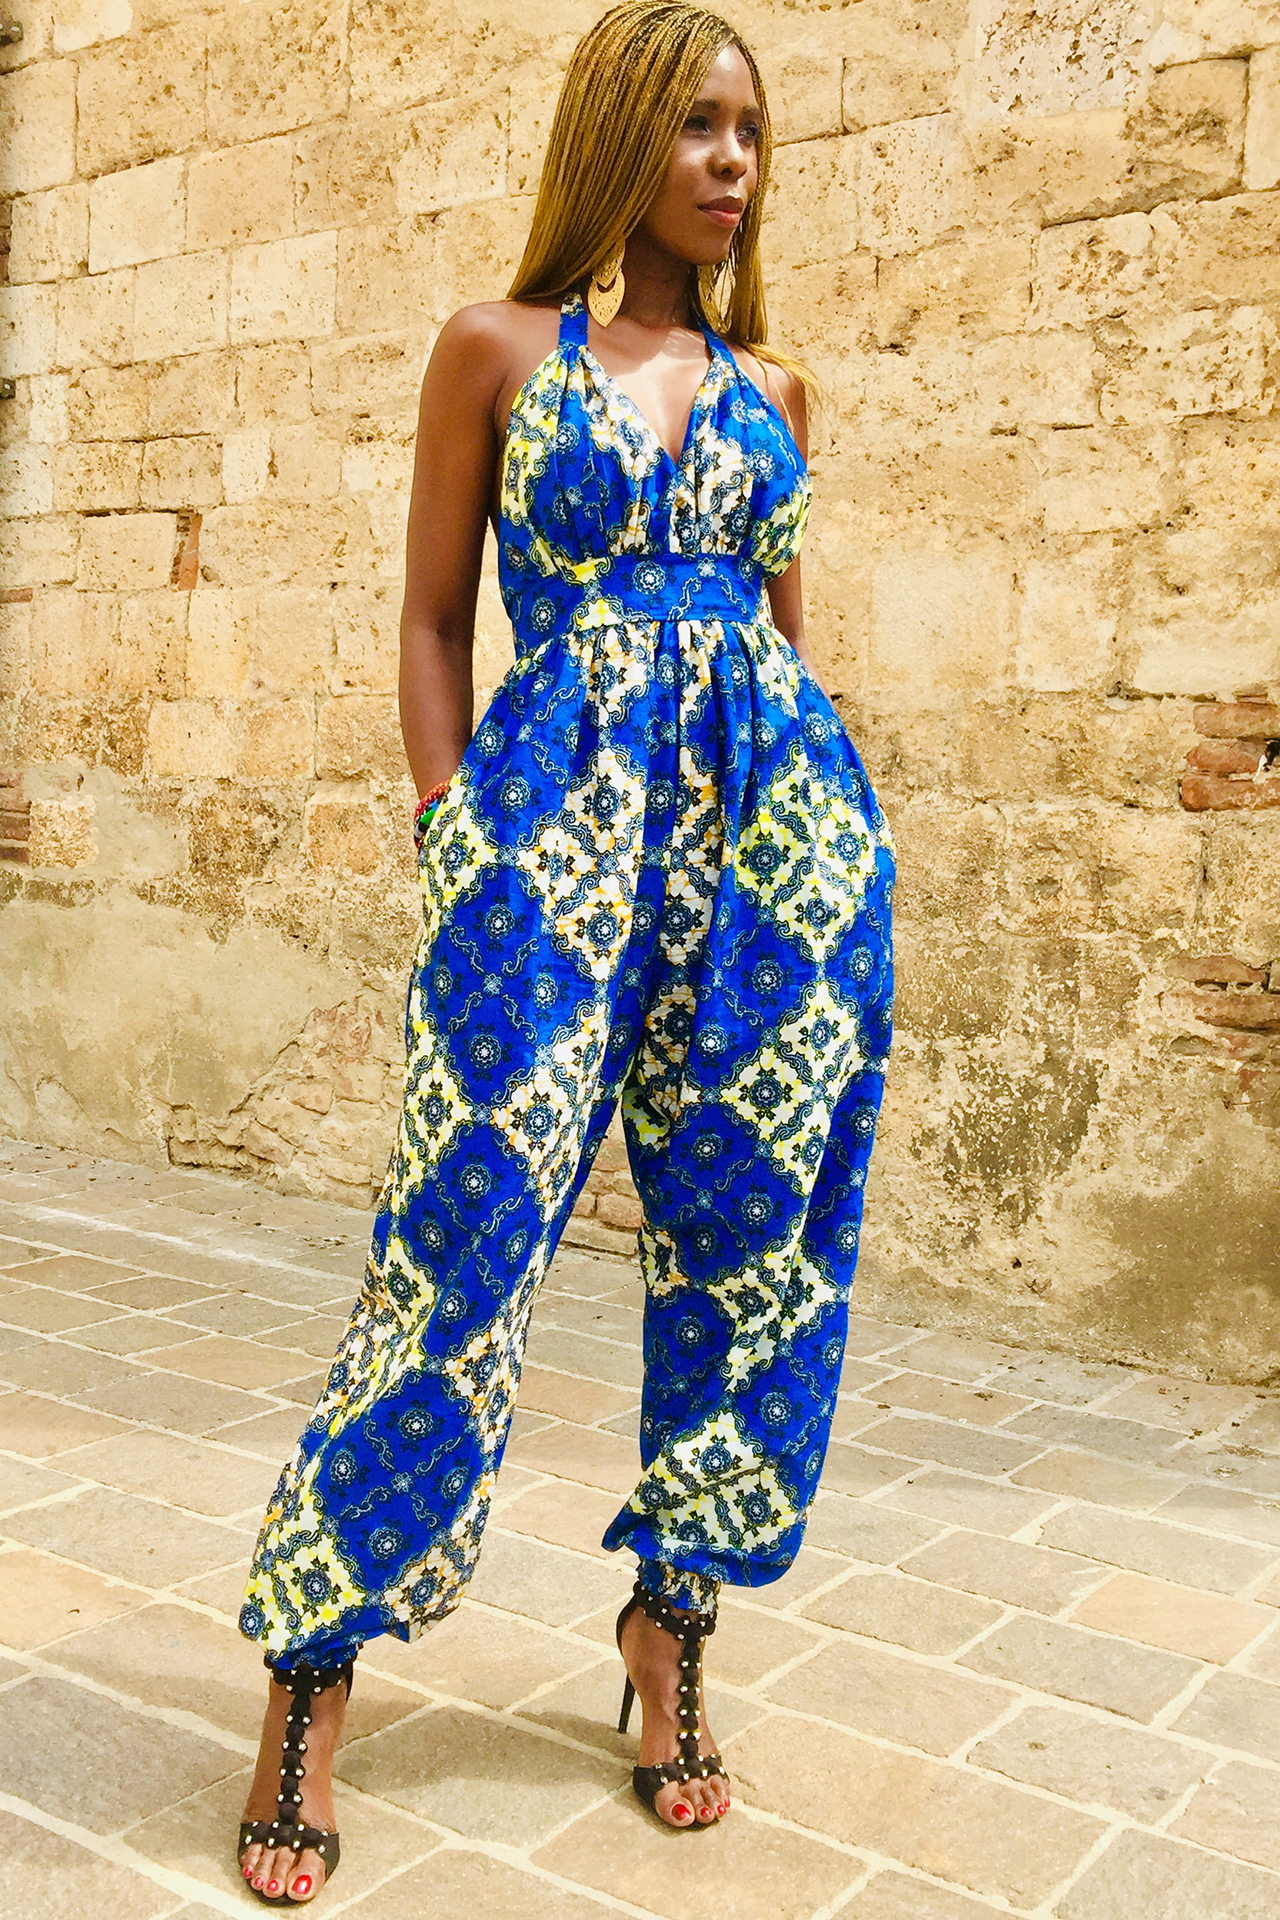  Afrikanische Mode - Sommerimpressionen 2019